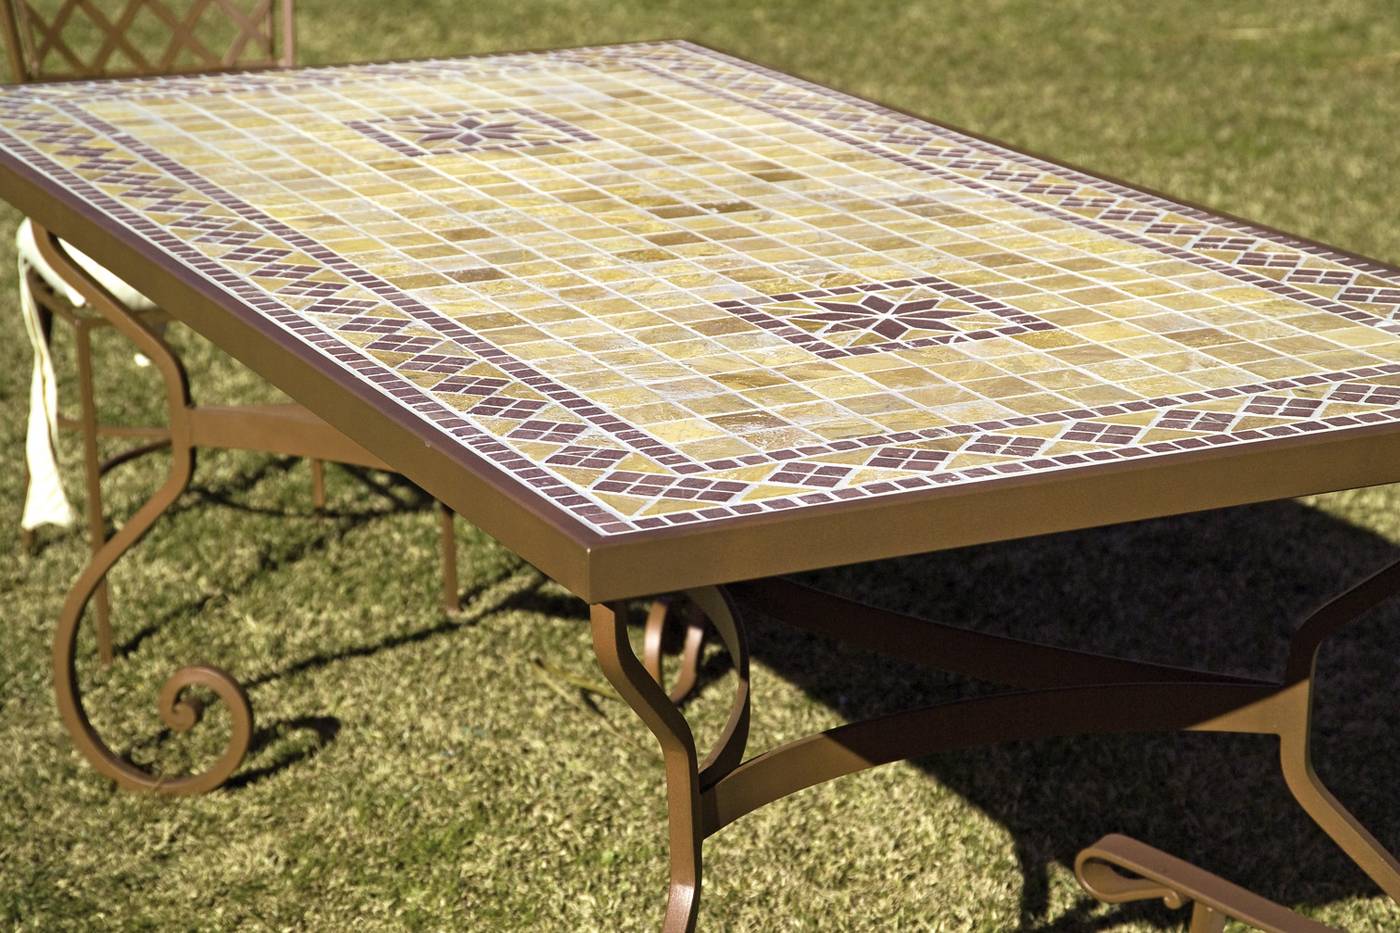 Conjunto forja Damasco - Conjunto de forja con mesa de mosaico o cristal y 4 sillones